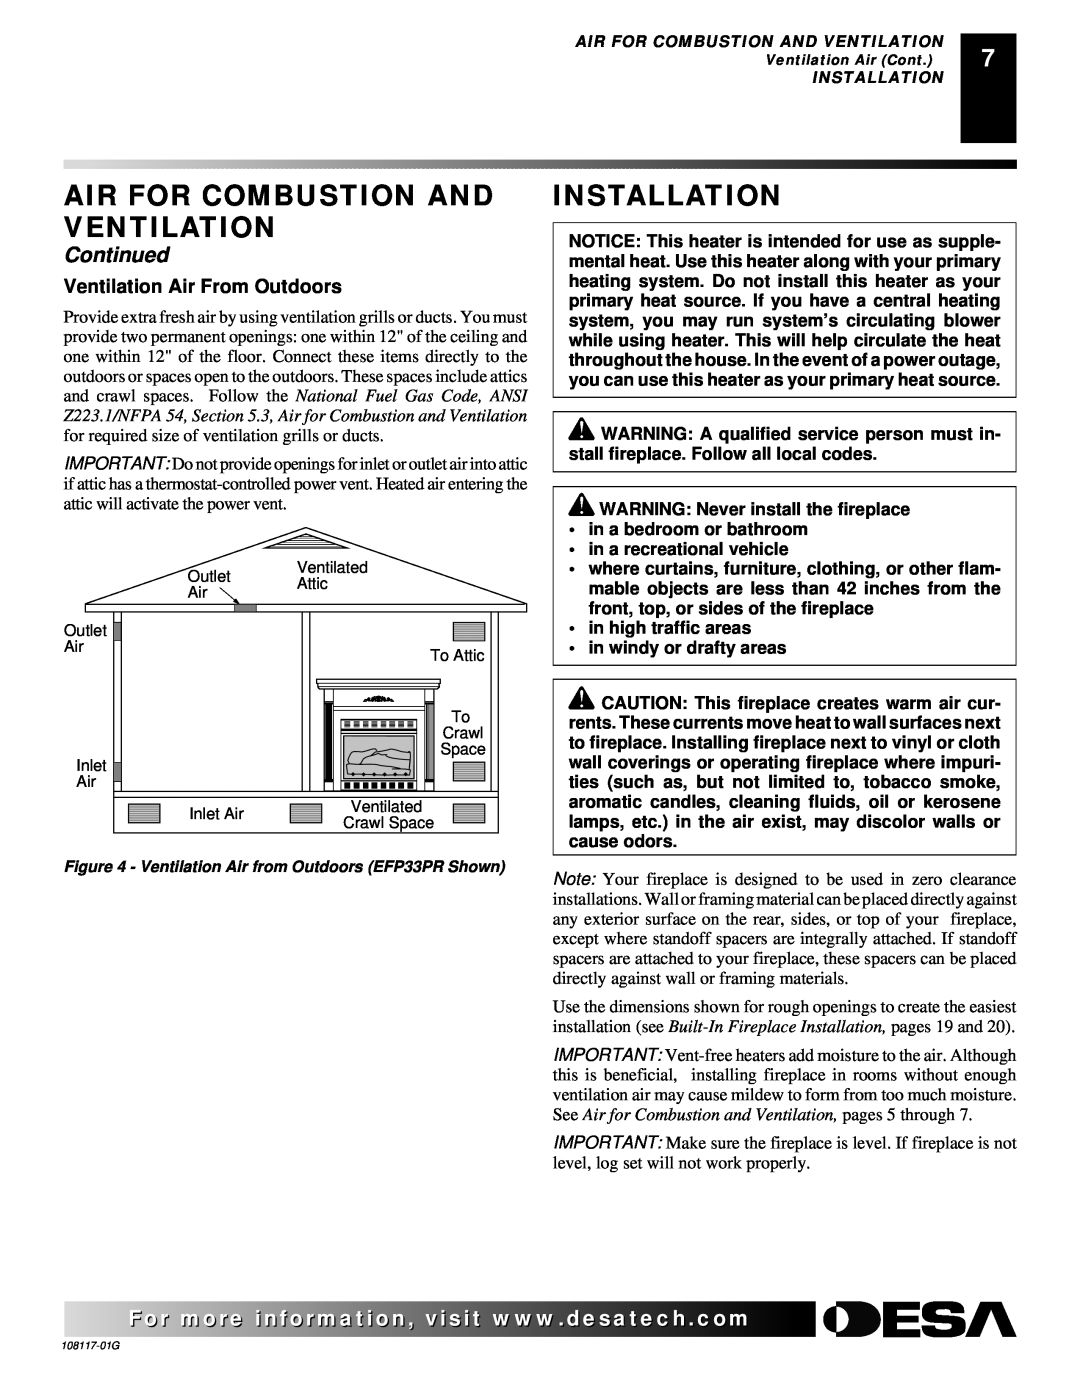 Desa CGEFP33PR, CGEFP33NR, EFP33PR, EFP33NR, VTGF33NR, VTGF33PR Installation, Air For Combustion And Ventilation 